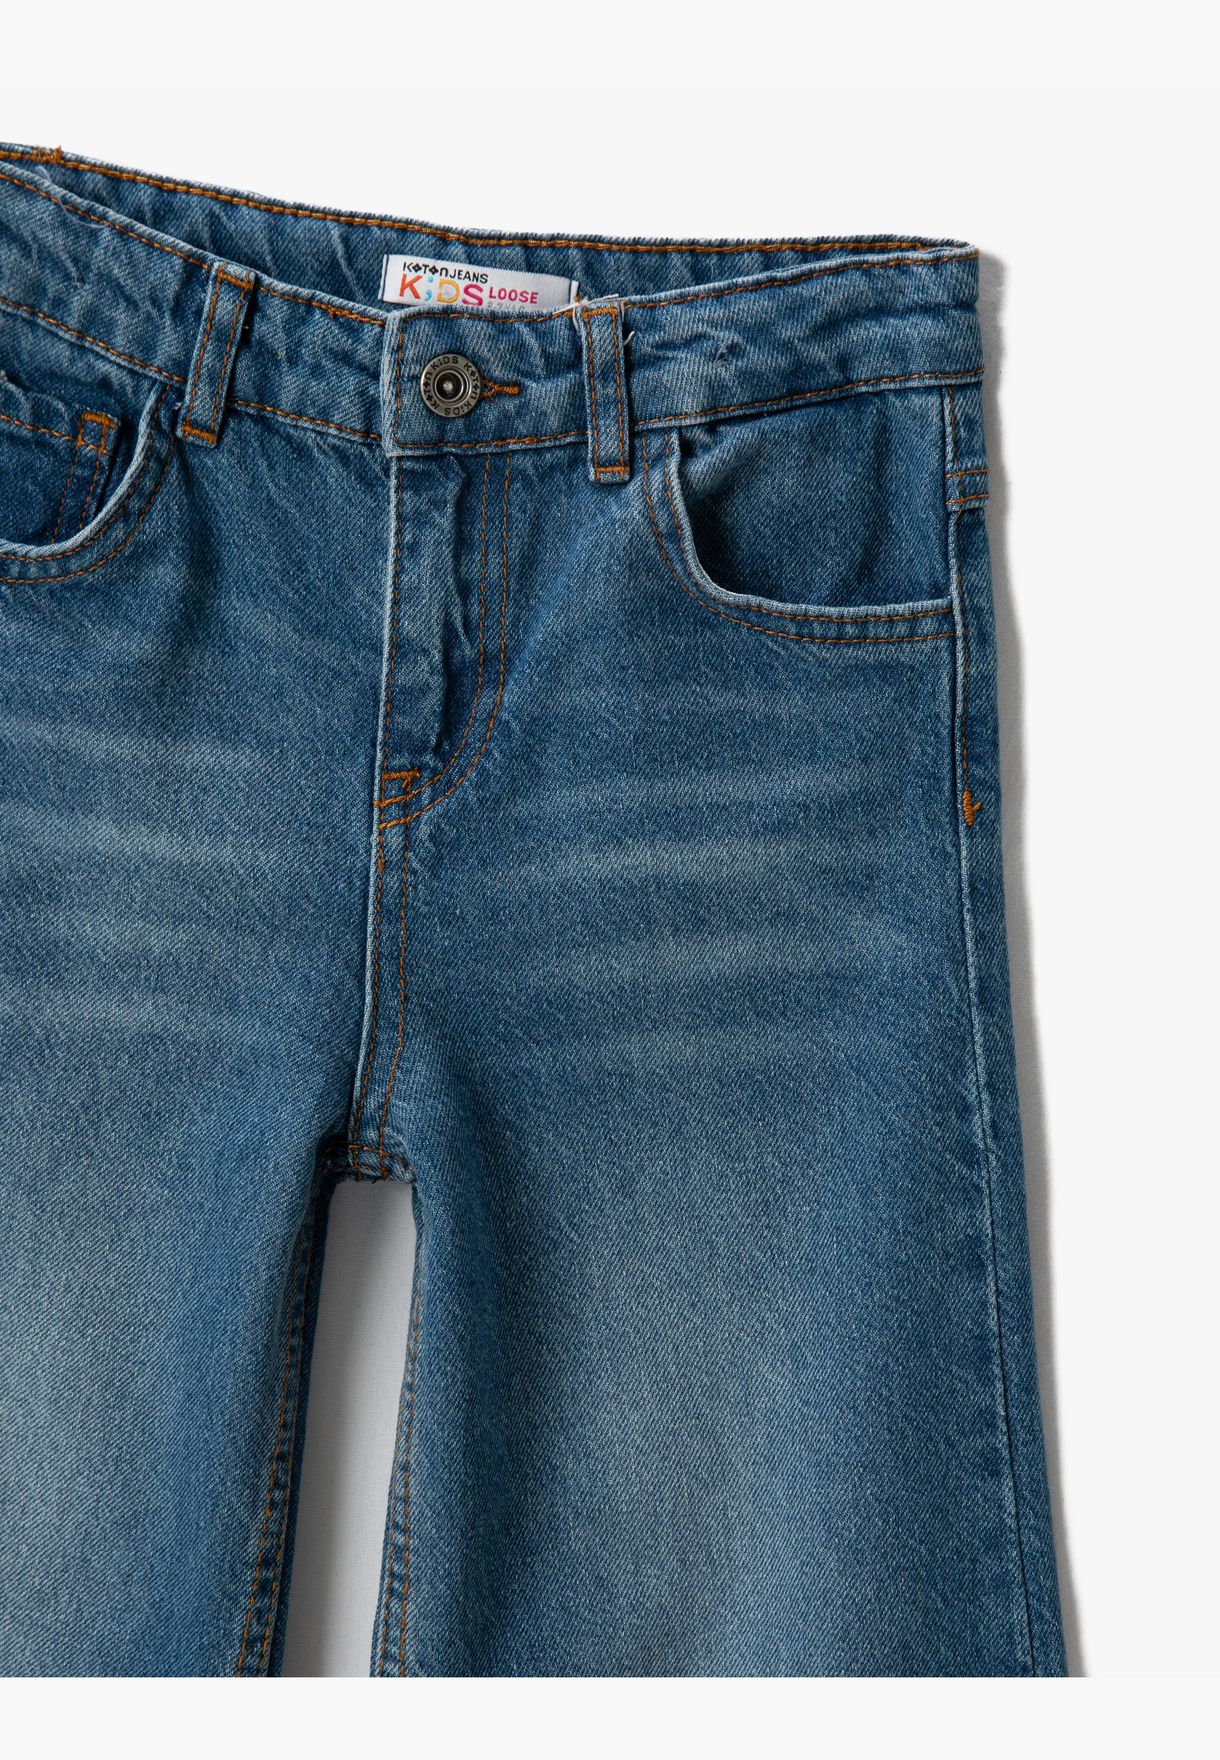 Wide Leg Jean - Button Closure Pocket Detail Cotton